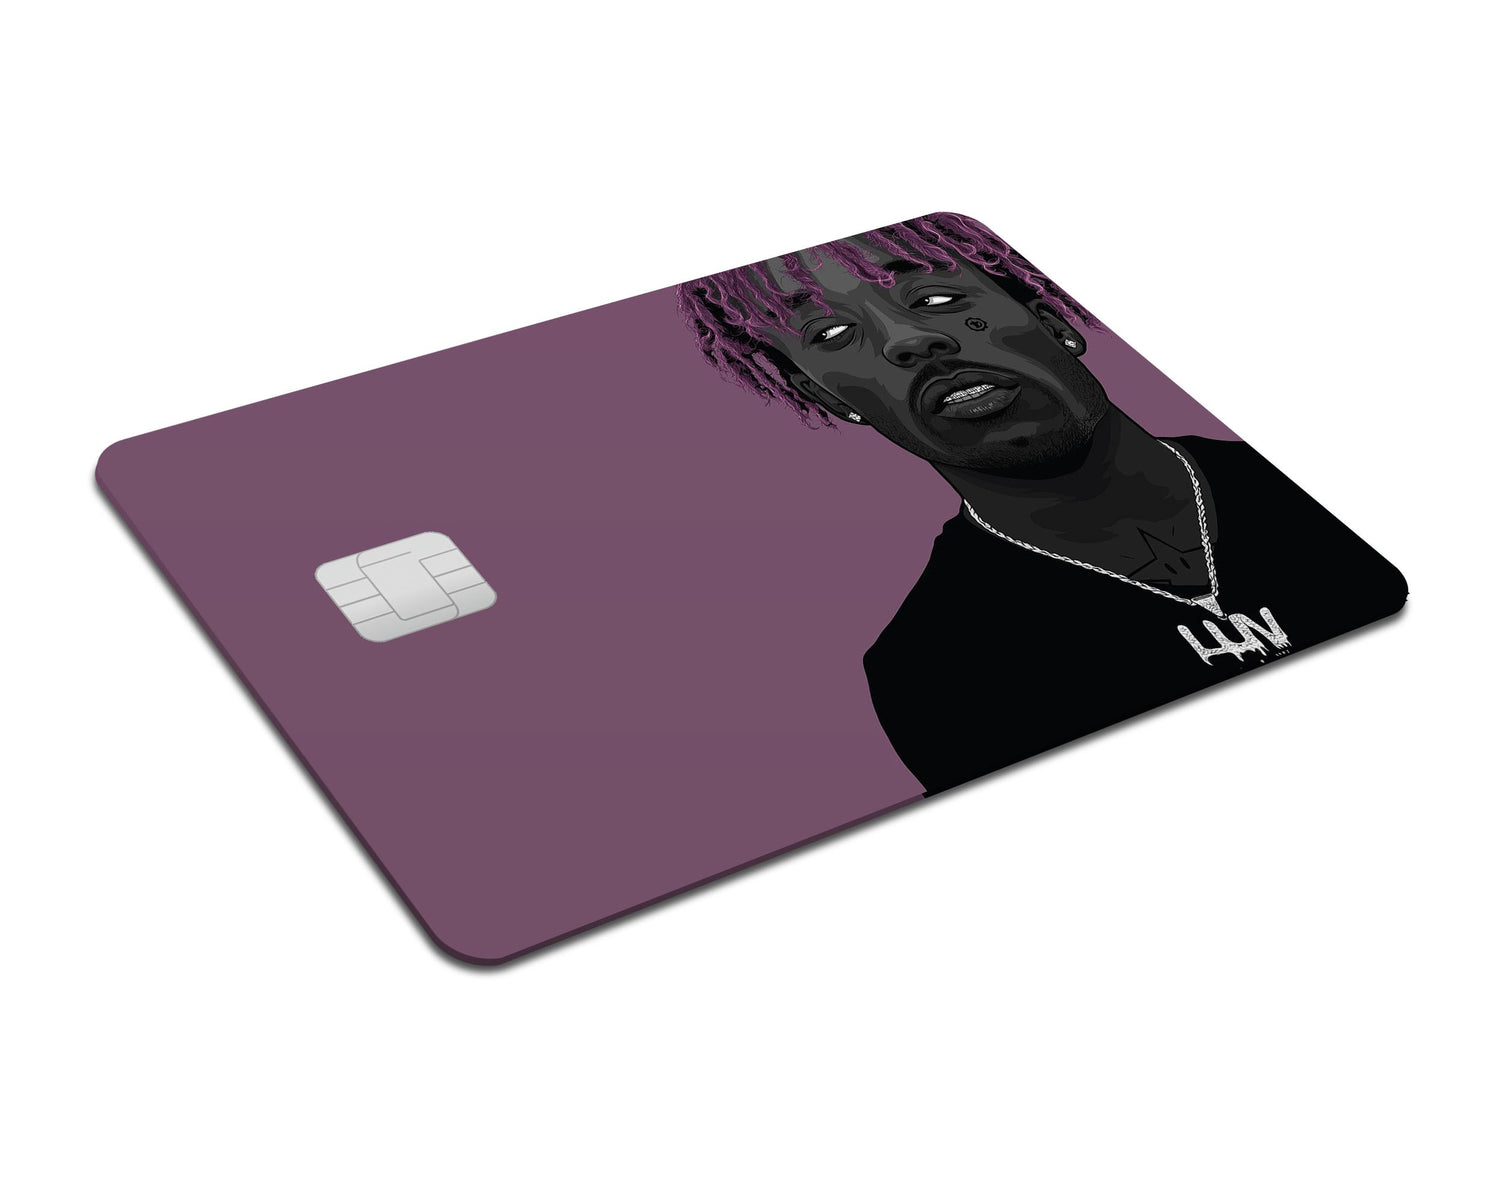 Flex Designs Credit Card Lil Uzi Full Skins - Artist  & Debit Card Skin